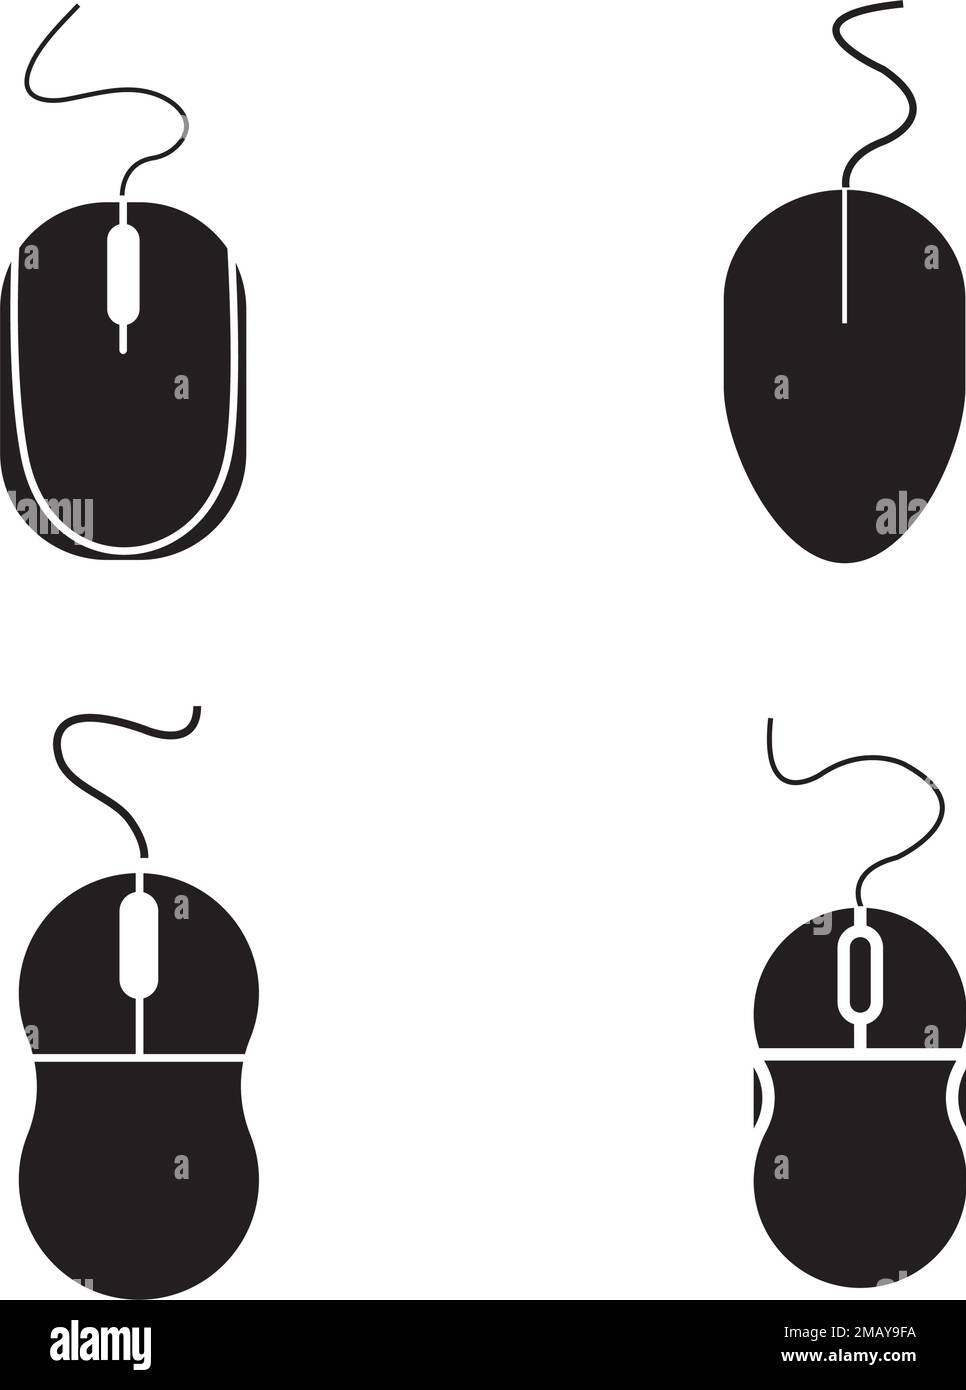 disegno illustrativo del logo del mouse komputer Illustrazione Vettoriale